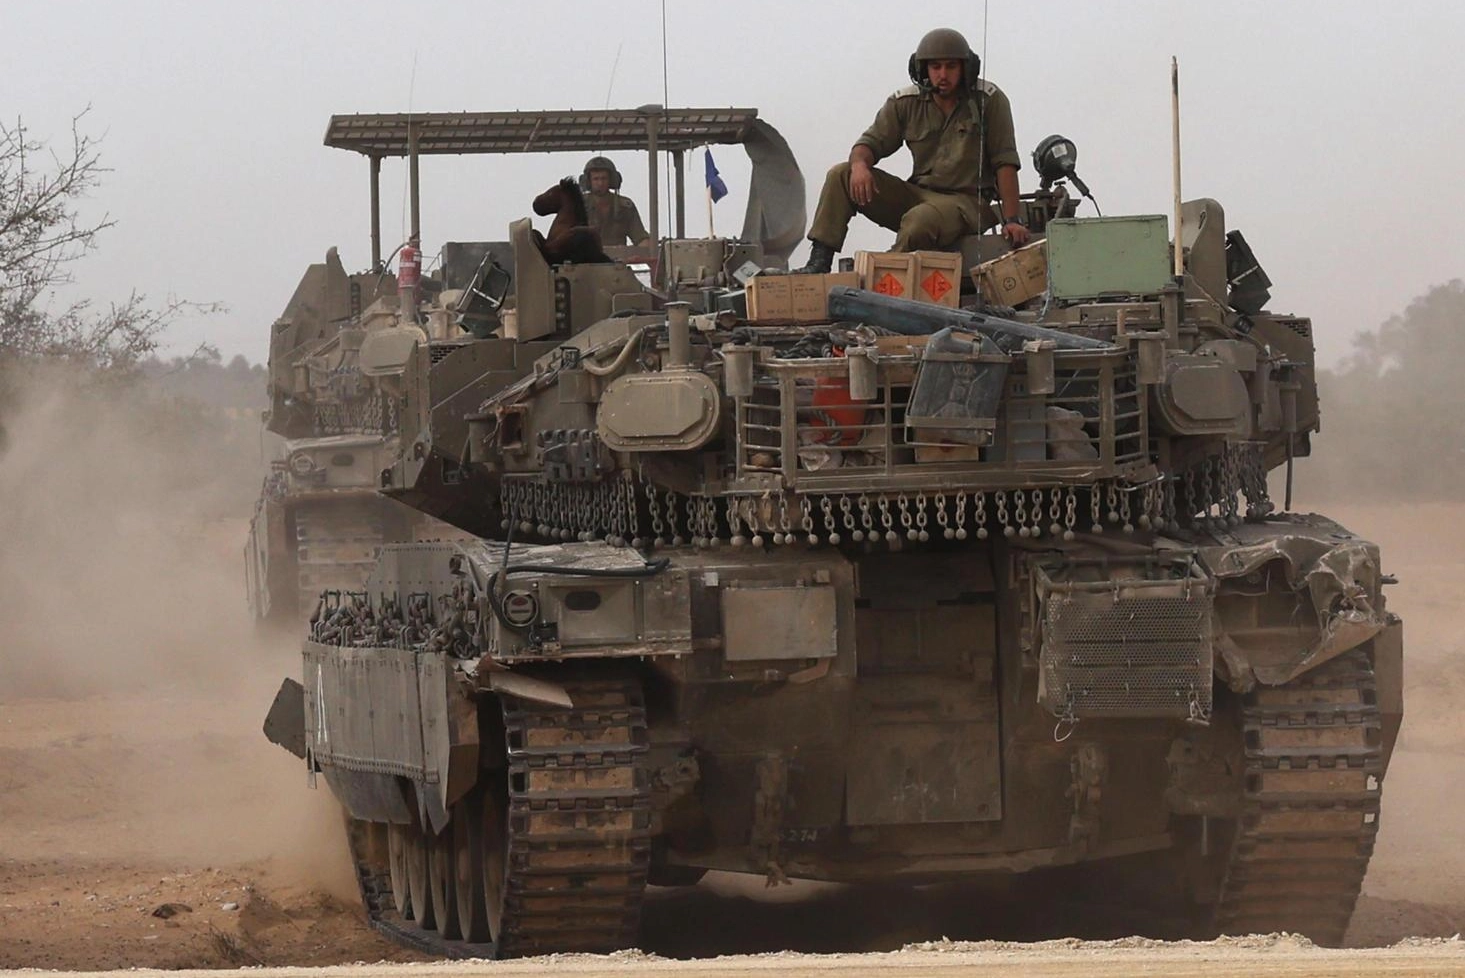 Rafah sotto assedio. Carri armati e blindati schierati al confine. Katz: "Se ci sarà accordo sospenderemo l'operazione militare"